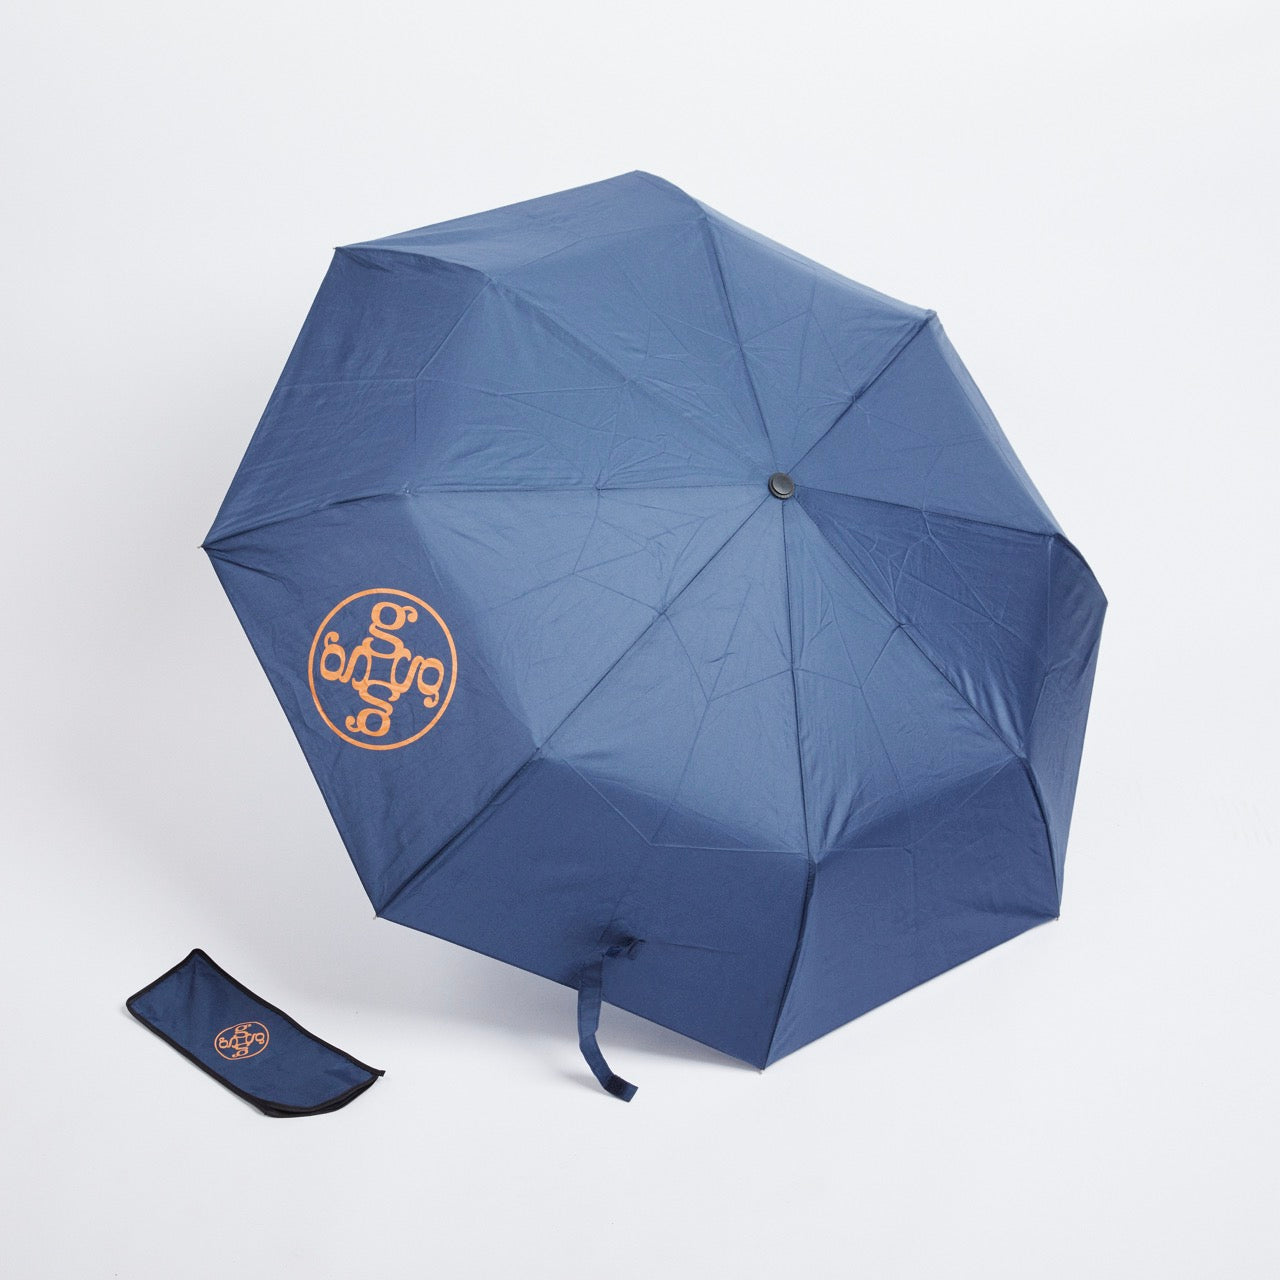 Cloudforest Umbrella Pocket Umbrella